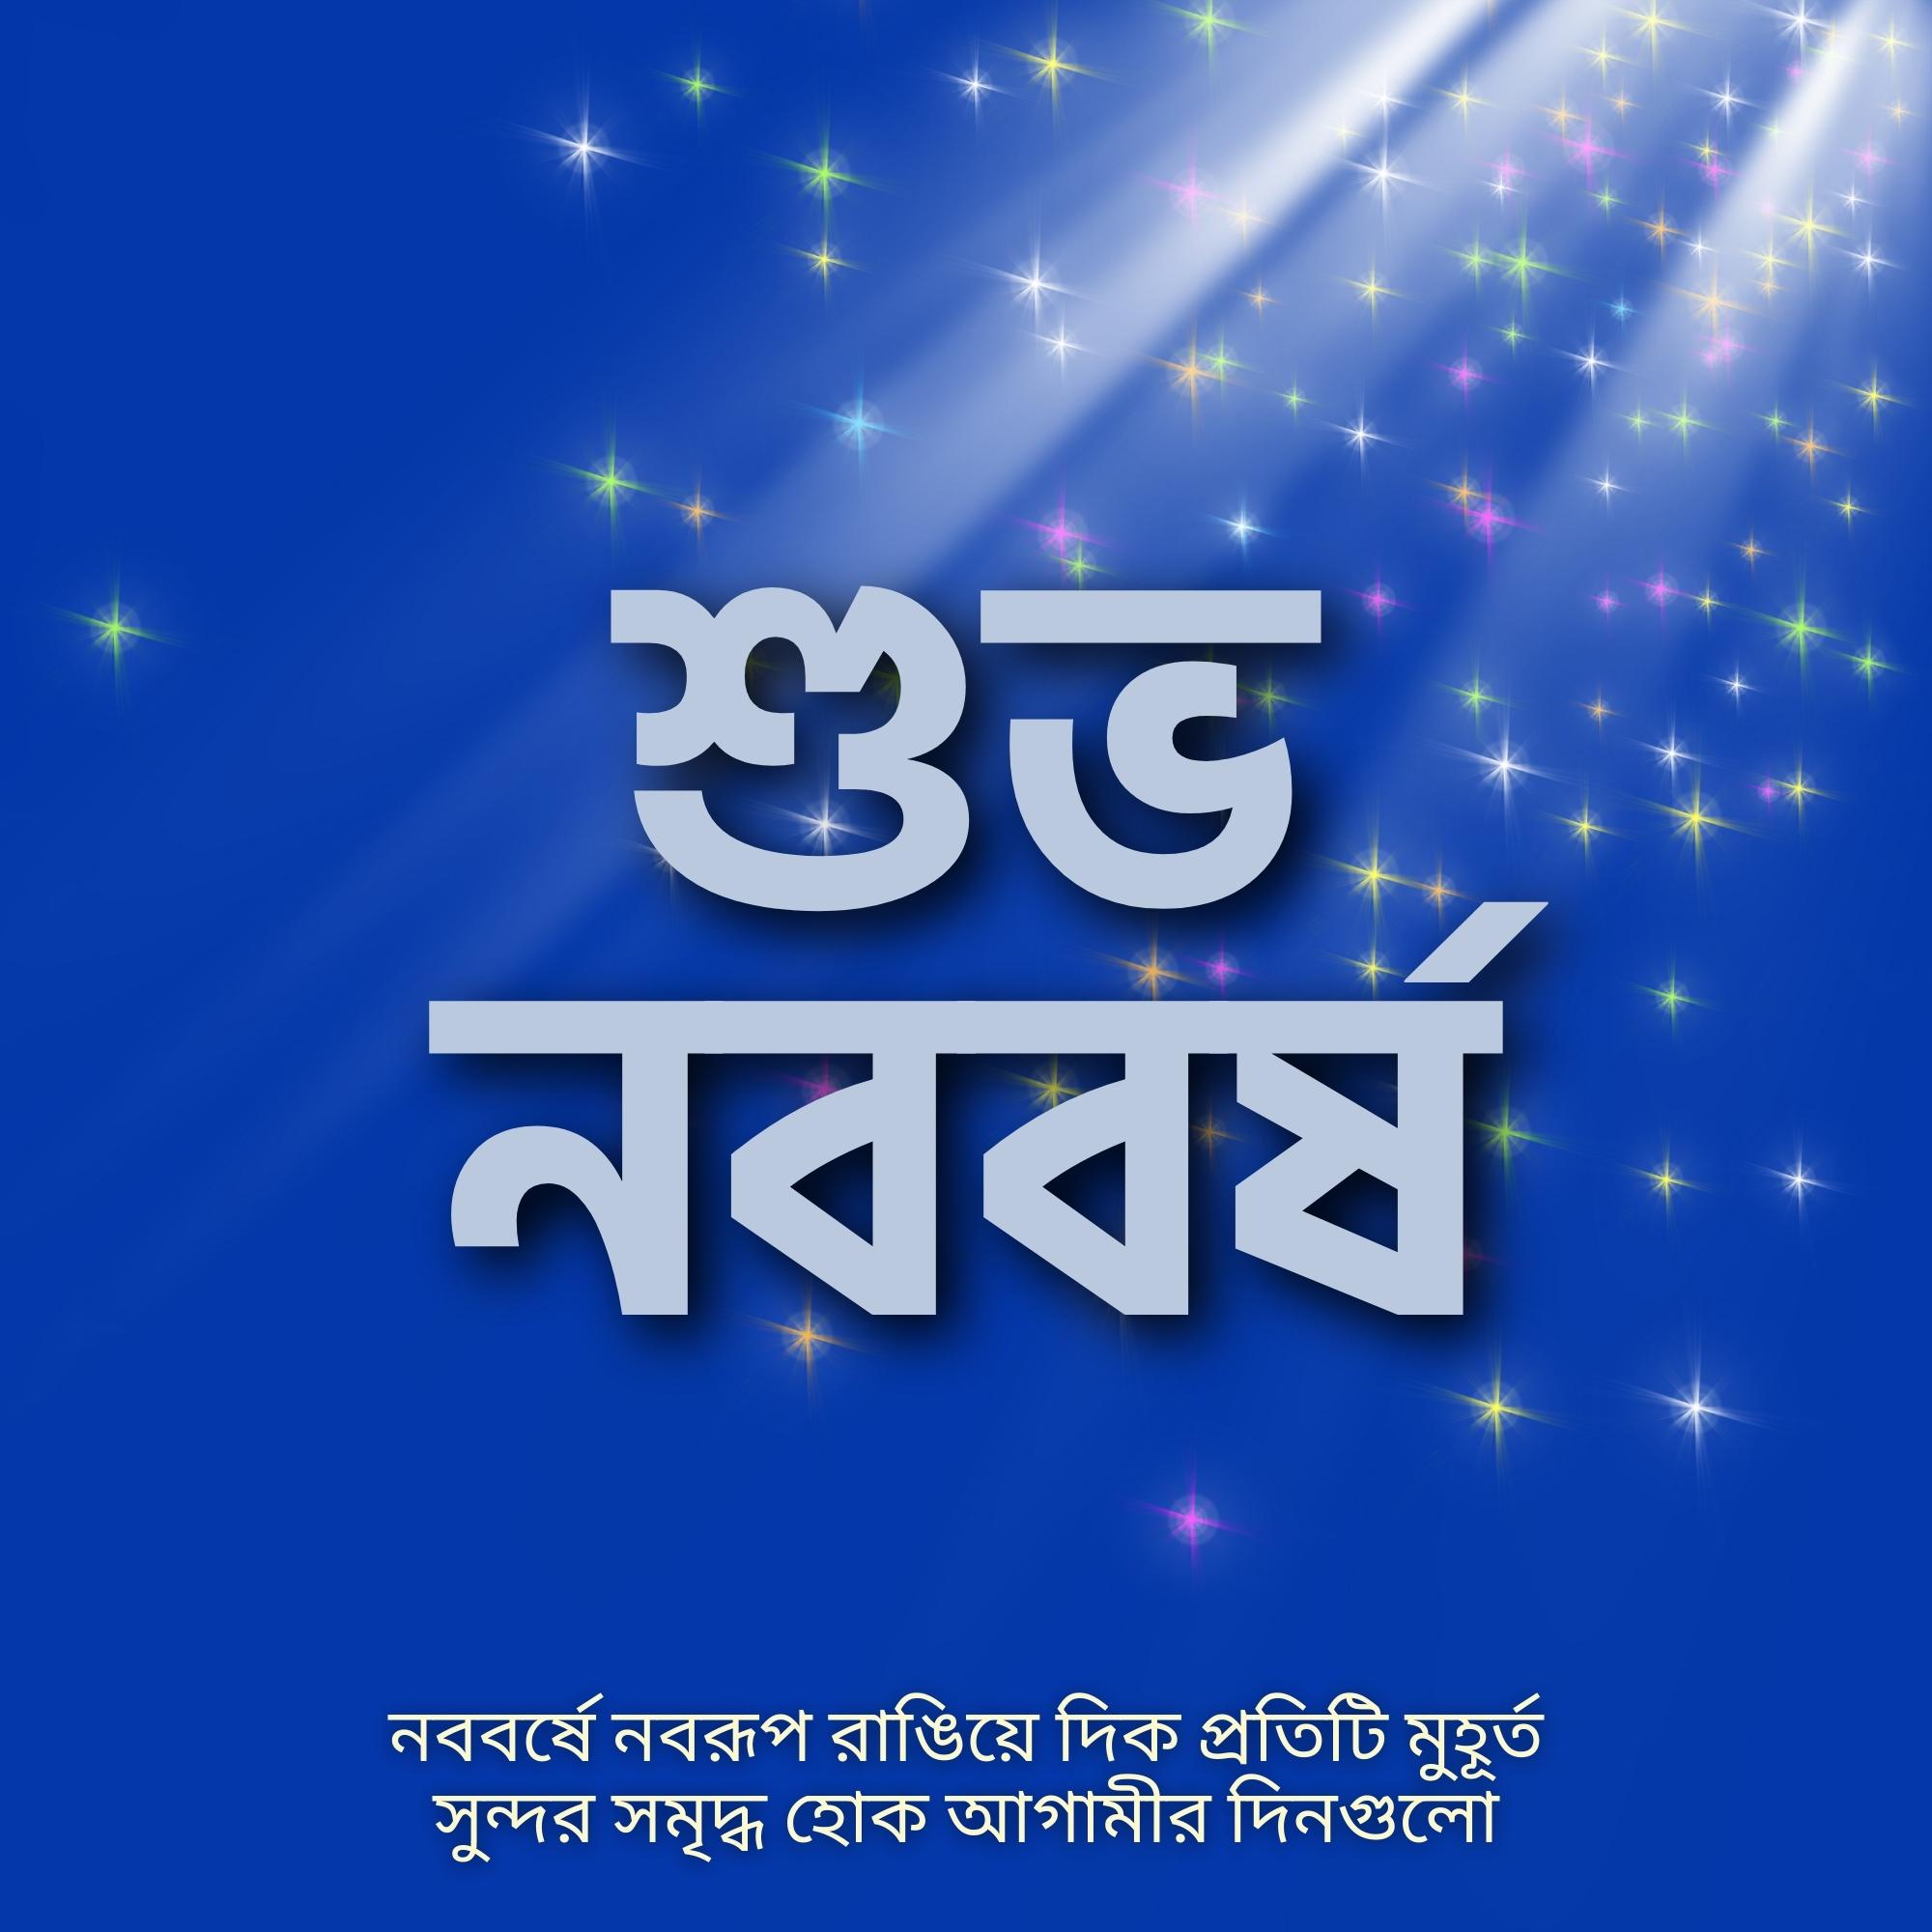 Shubho Nababarsha Image